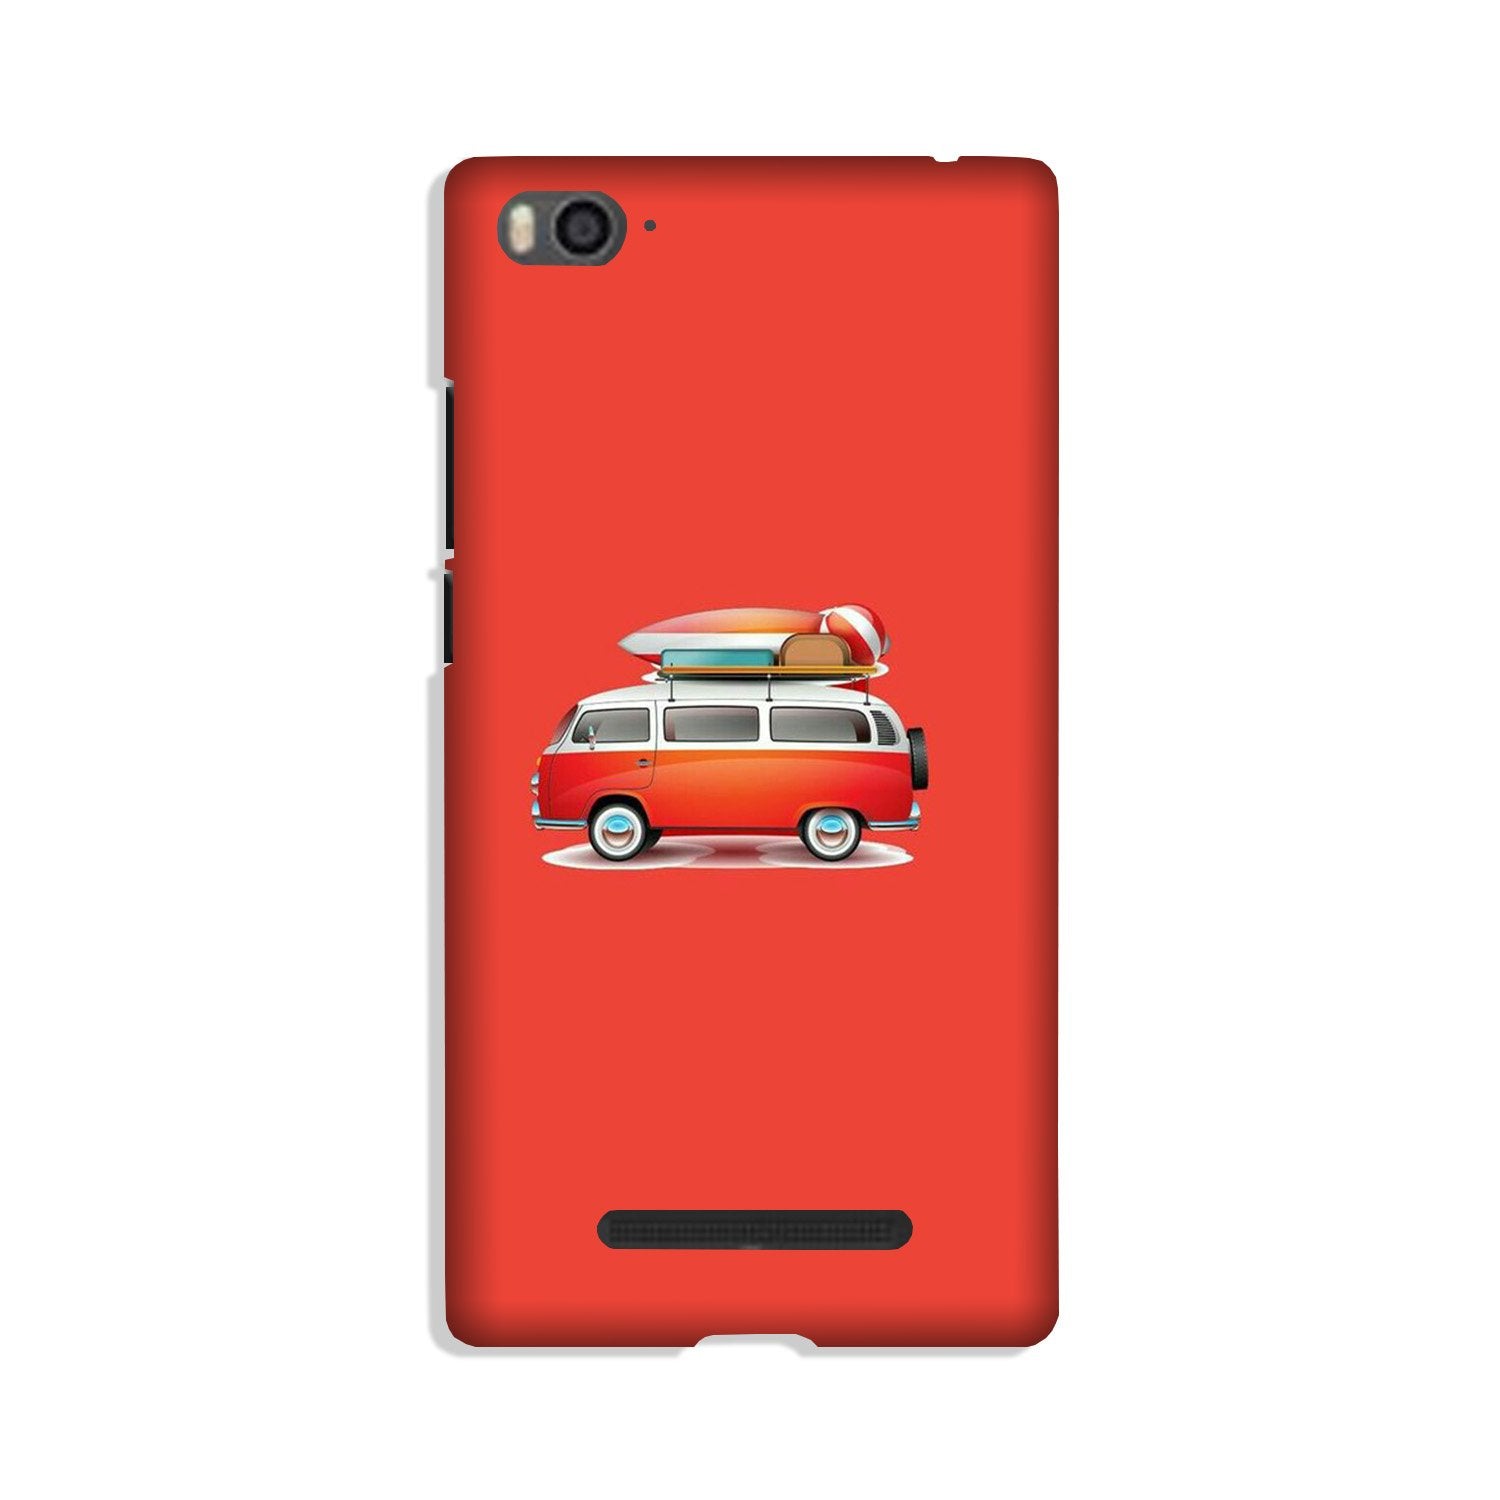 Travel Bus Case for Xiaomi Redmi 5A (Design No. 258)